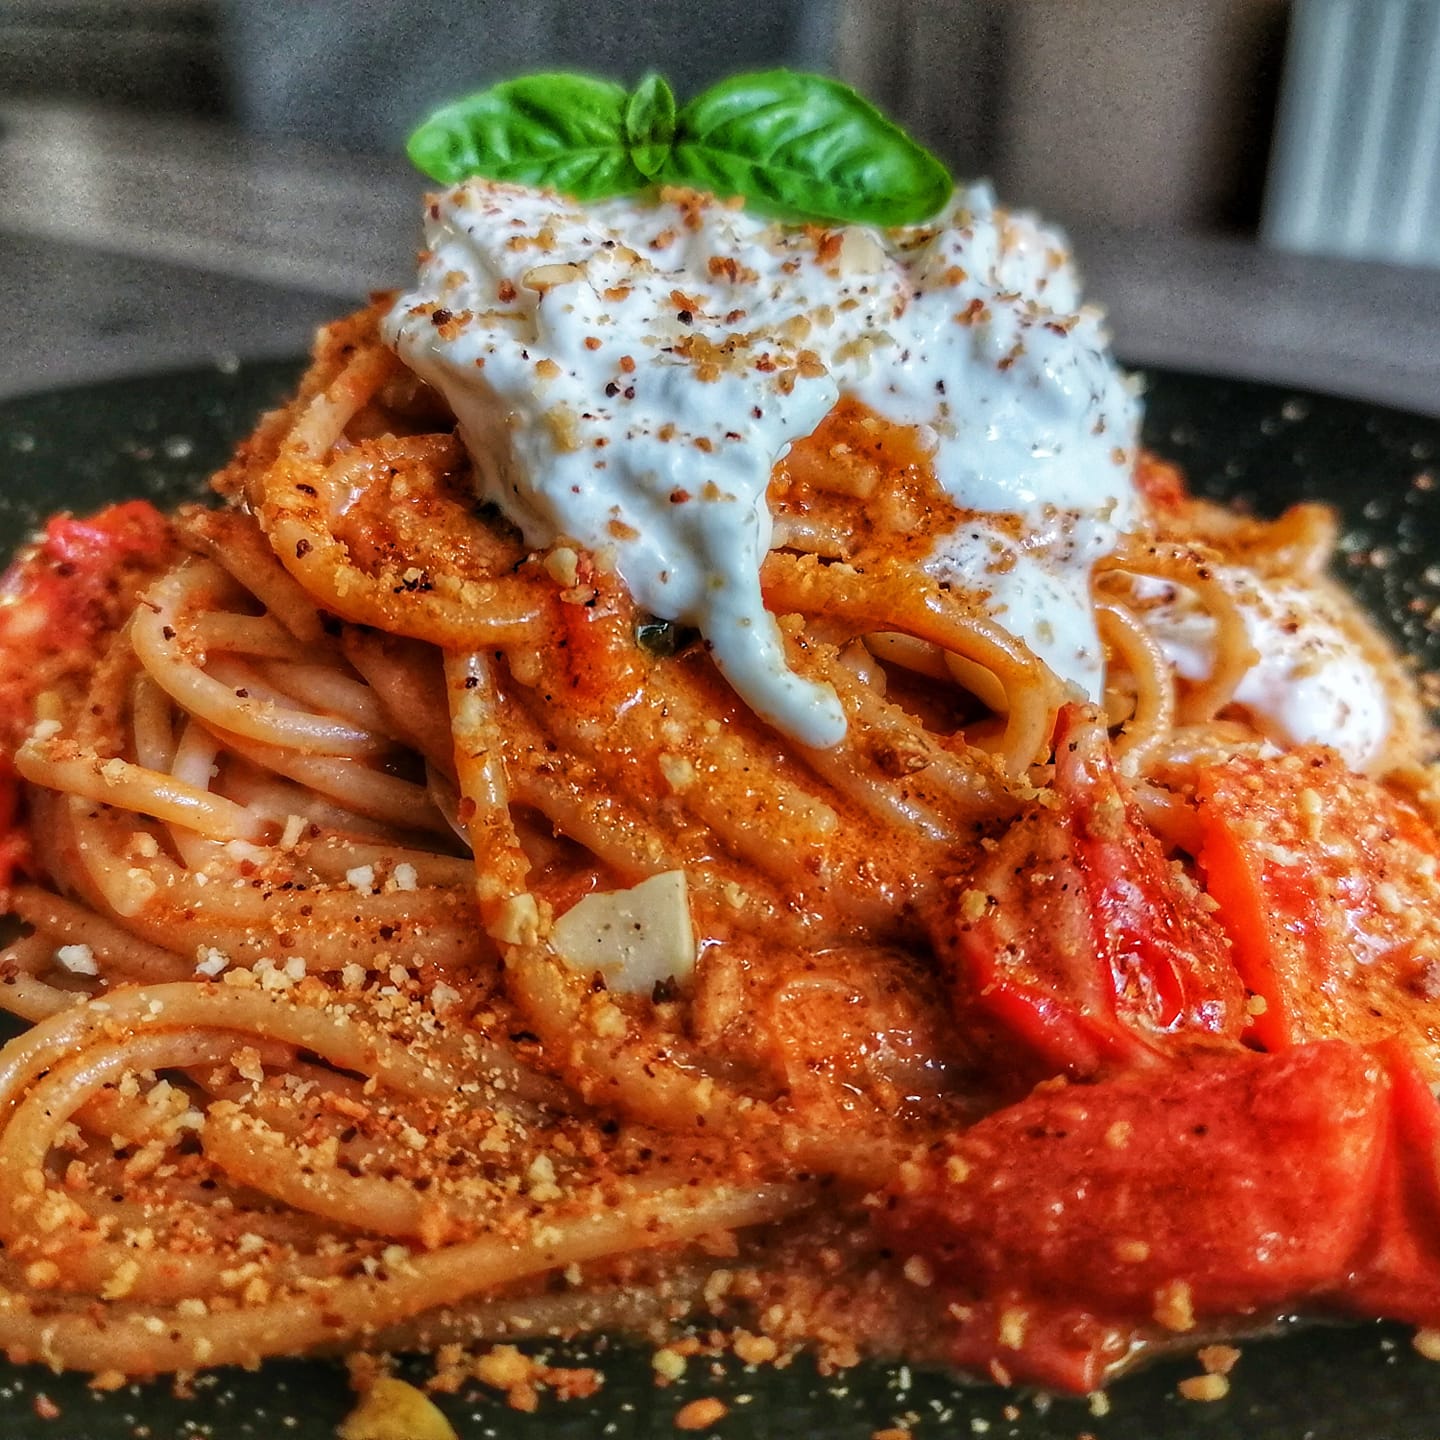 spaghetti-alla-re-ferdinando-ii,-l’antica-ricetta-napoletana-che-va-“annanz-u-re”.-buonissimi-e-pronti-in-10-minuti